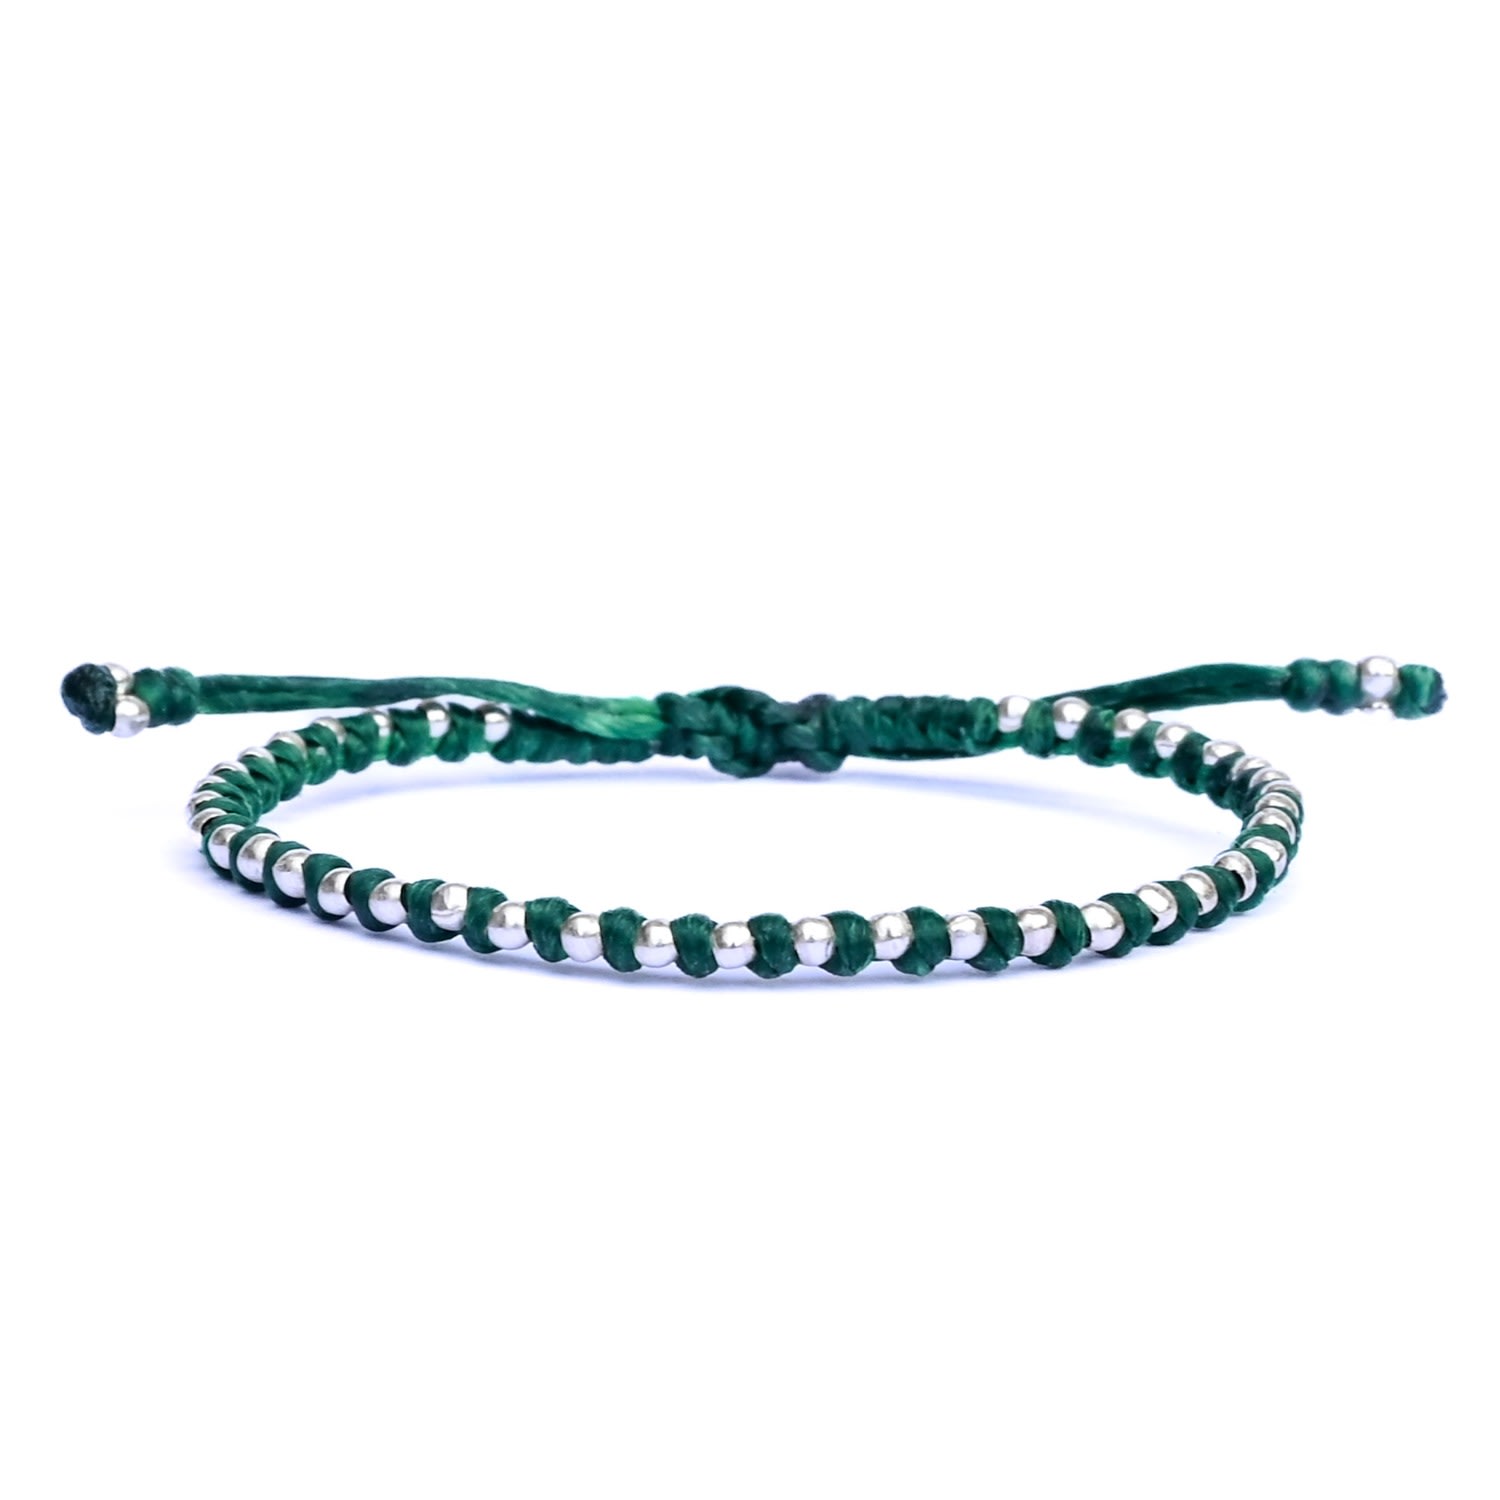 Women’s Nature-Inspired Chic Green Friendship Bracelet - Spitafields Harbour Uk Bracelets